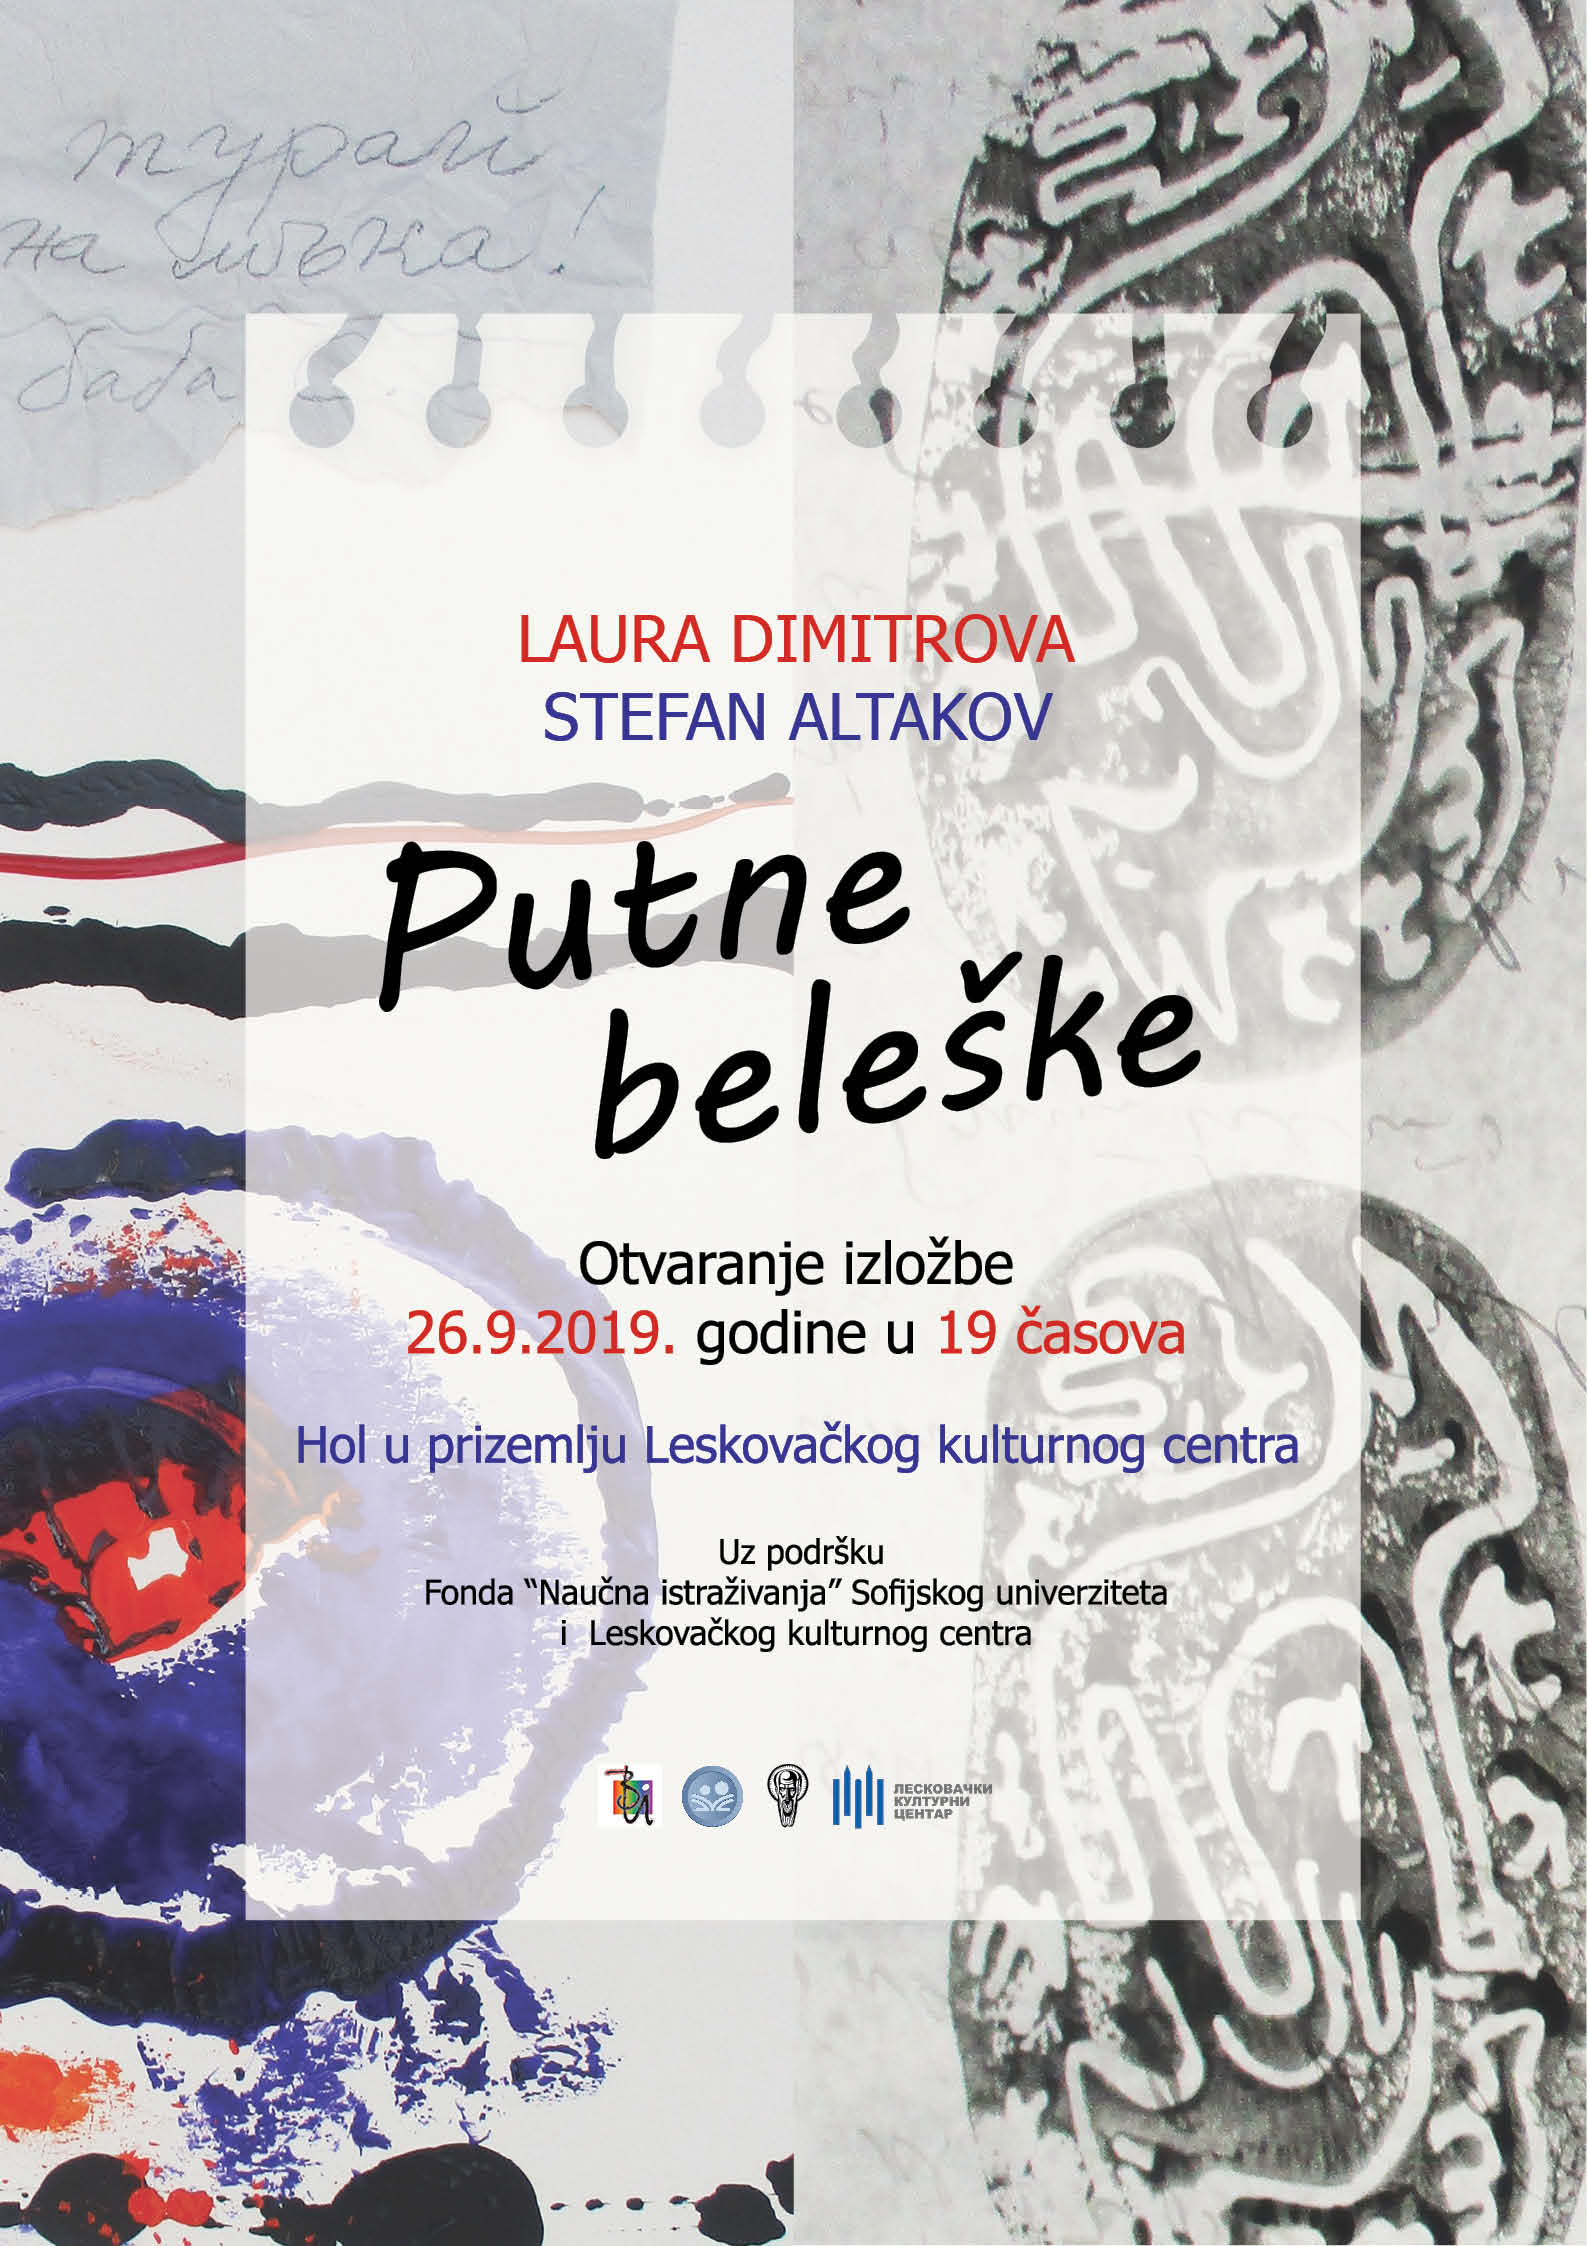 Otvaranje izložbe "Putne beleške" Laura Dimitrova i Stefan Altakov